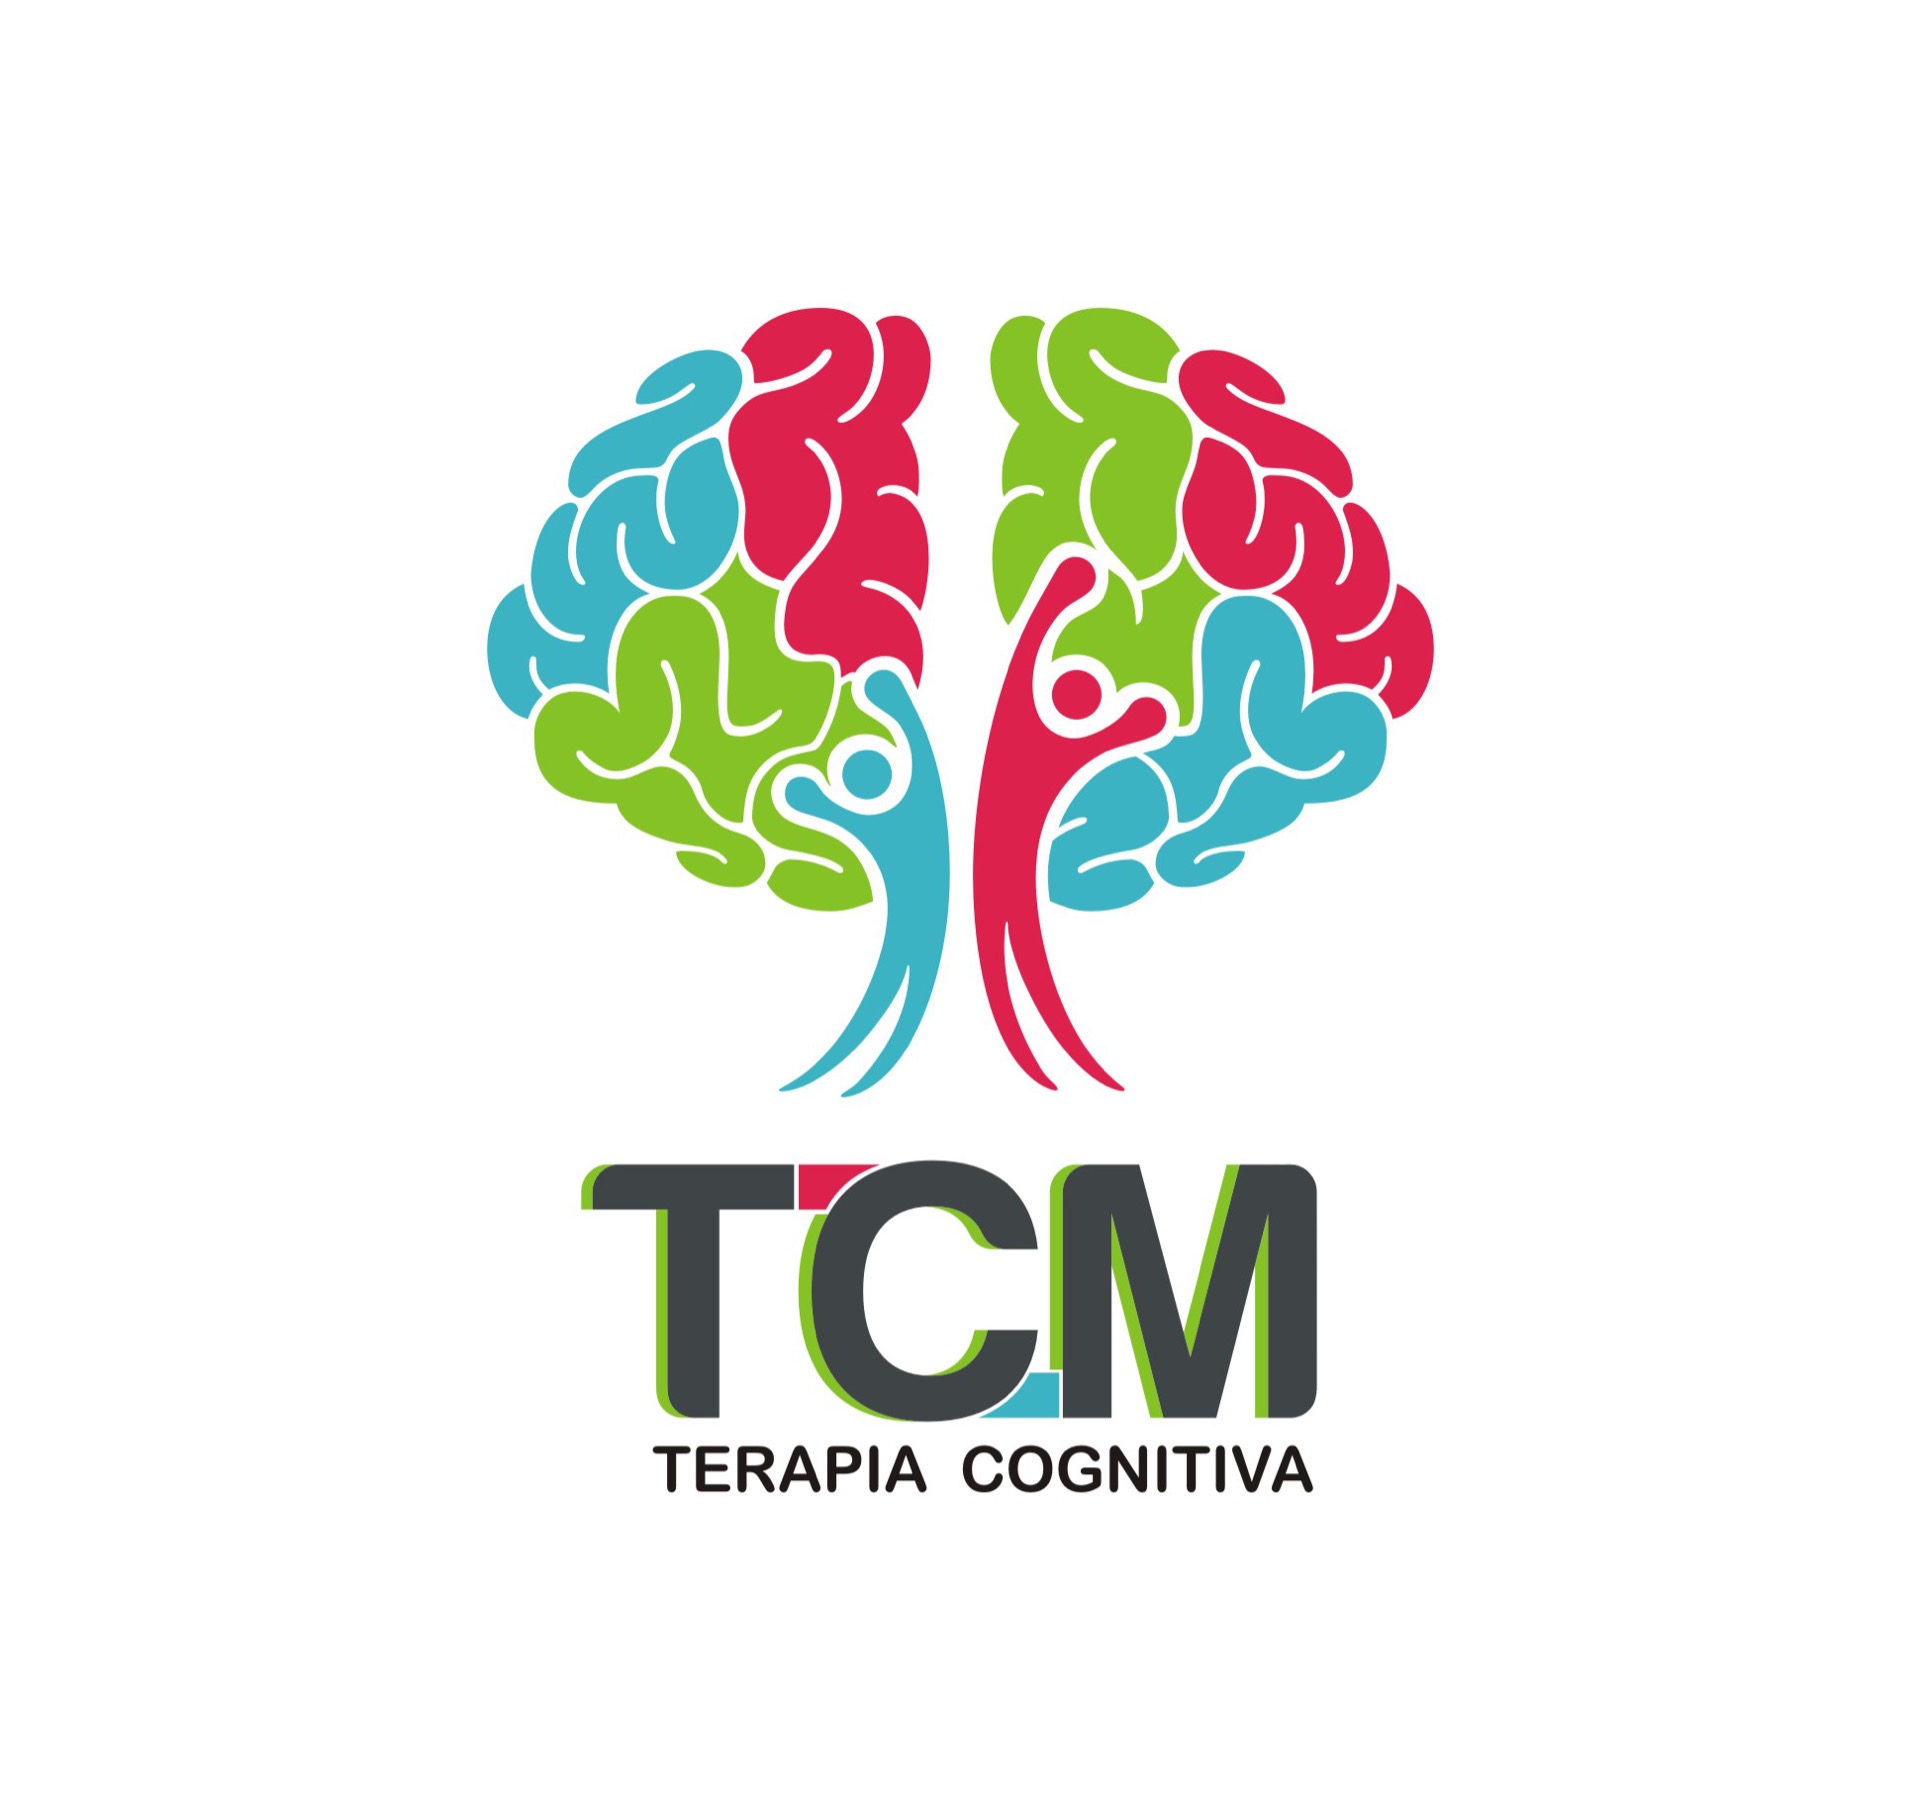 TCM - Terapia Cognitiva